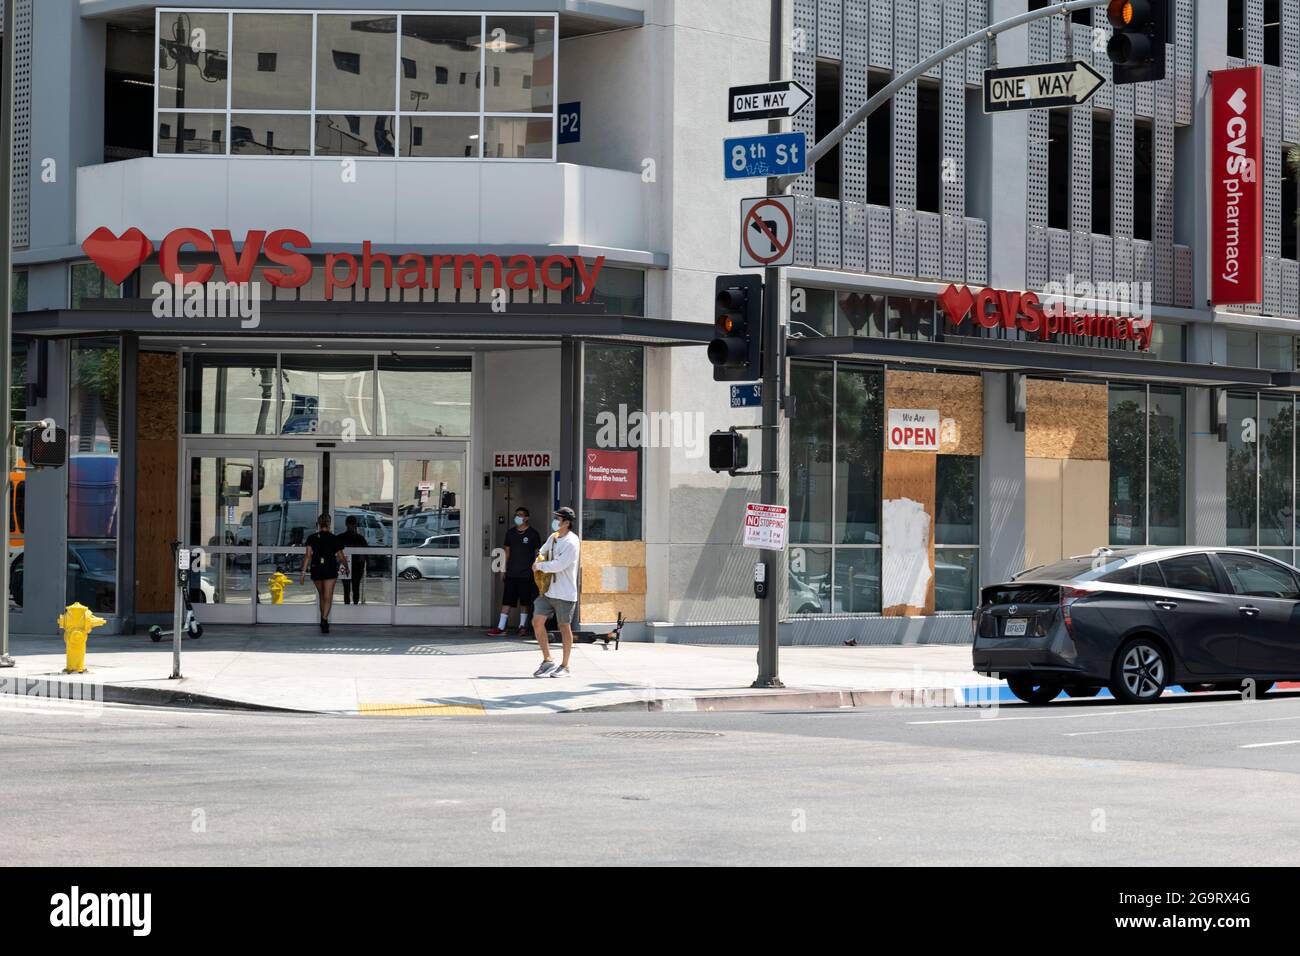 Los Angeles, CA USA - 20 août 2020: Windows sur la pharmacie CVS est monté avec un garde de sécurité après les émeutes de la vie noire et le pillage dans le bas Banque D'Images